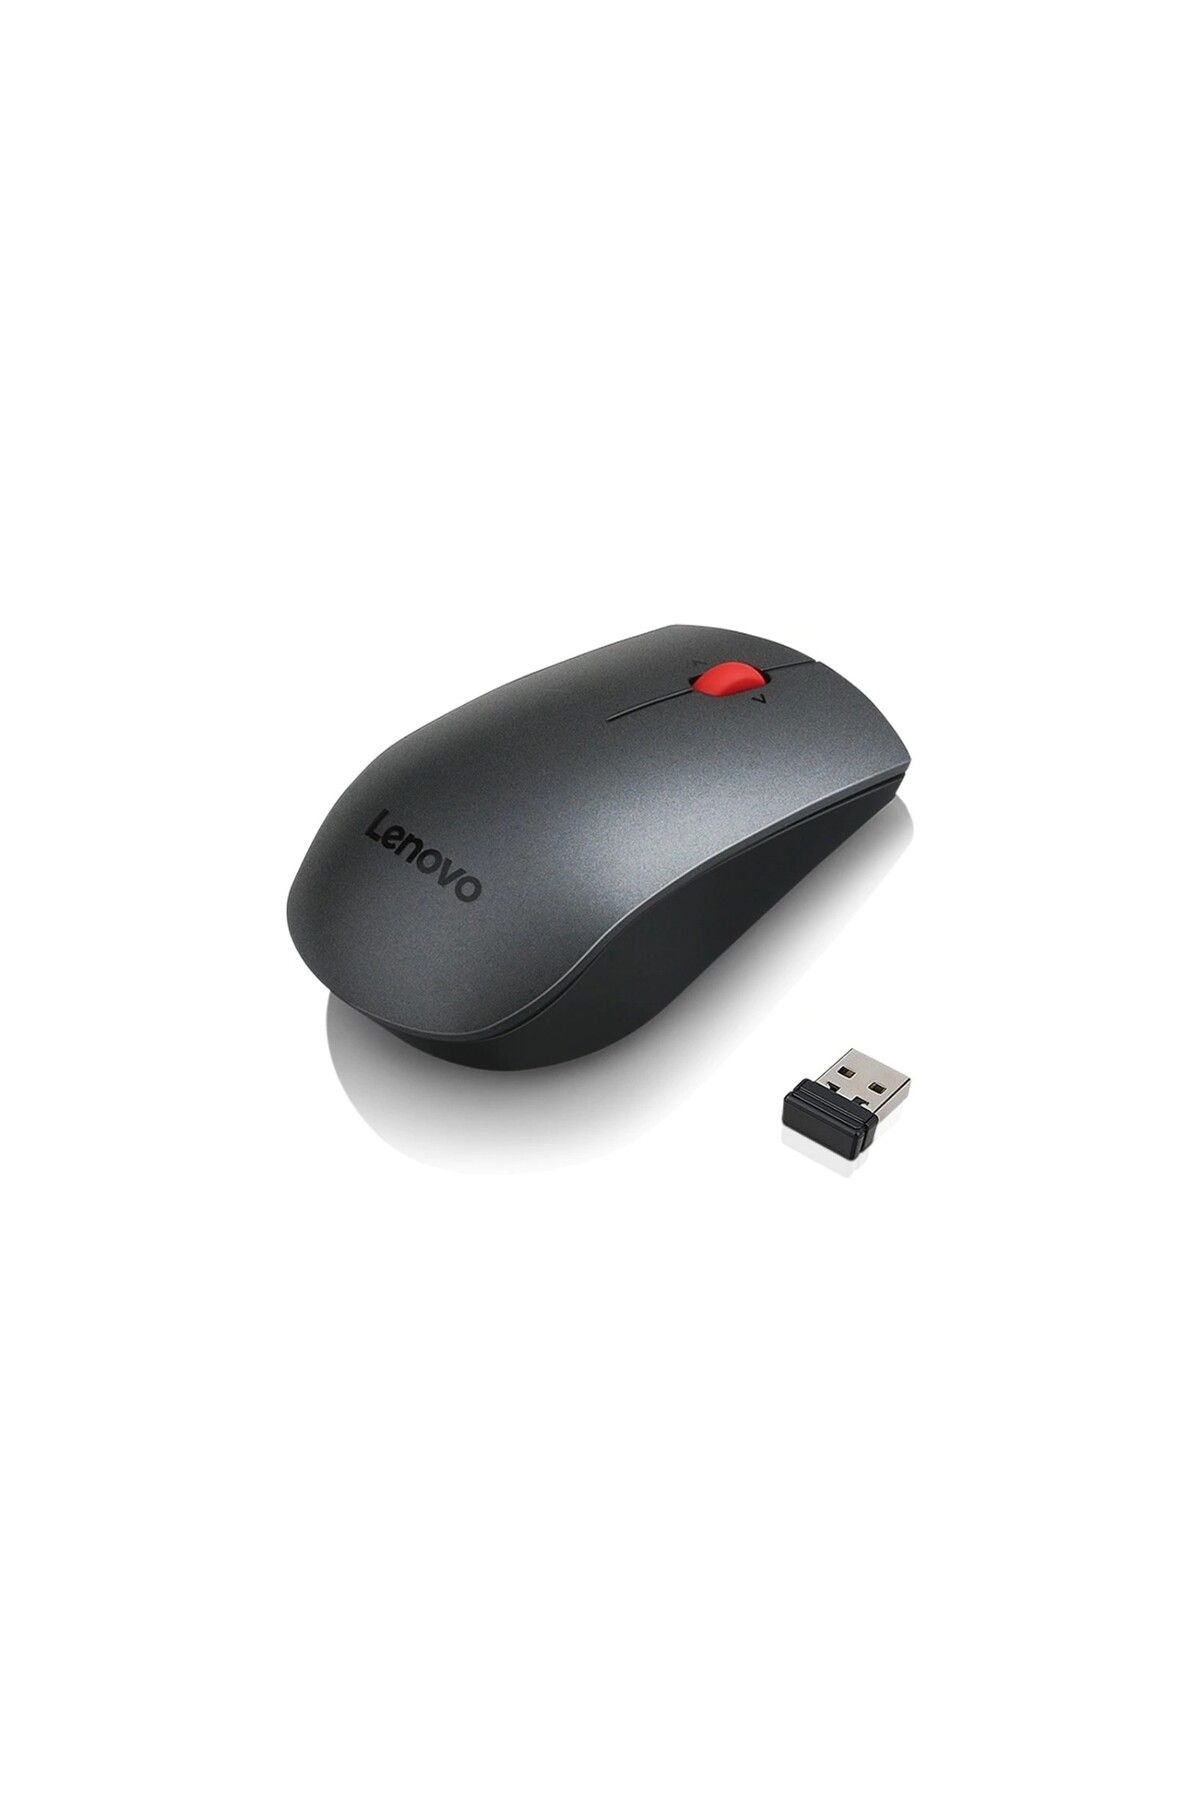 sommeow Lenovo Wireless Kablosuz 1600dpı Lazer Mouse 700 Siyah